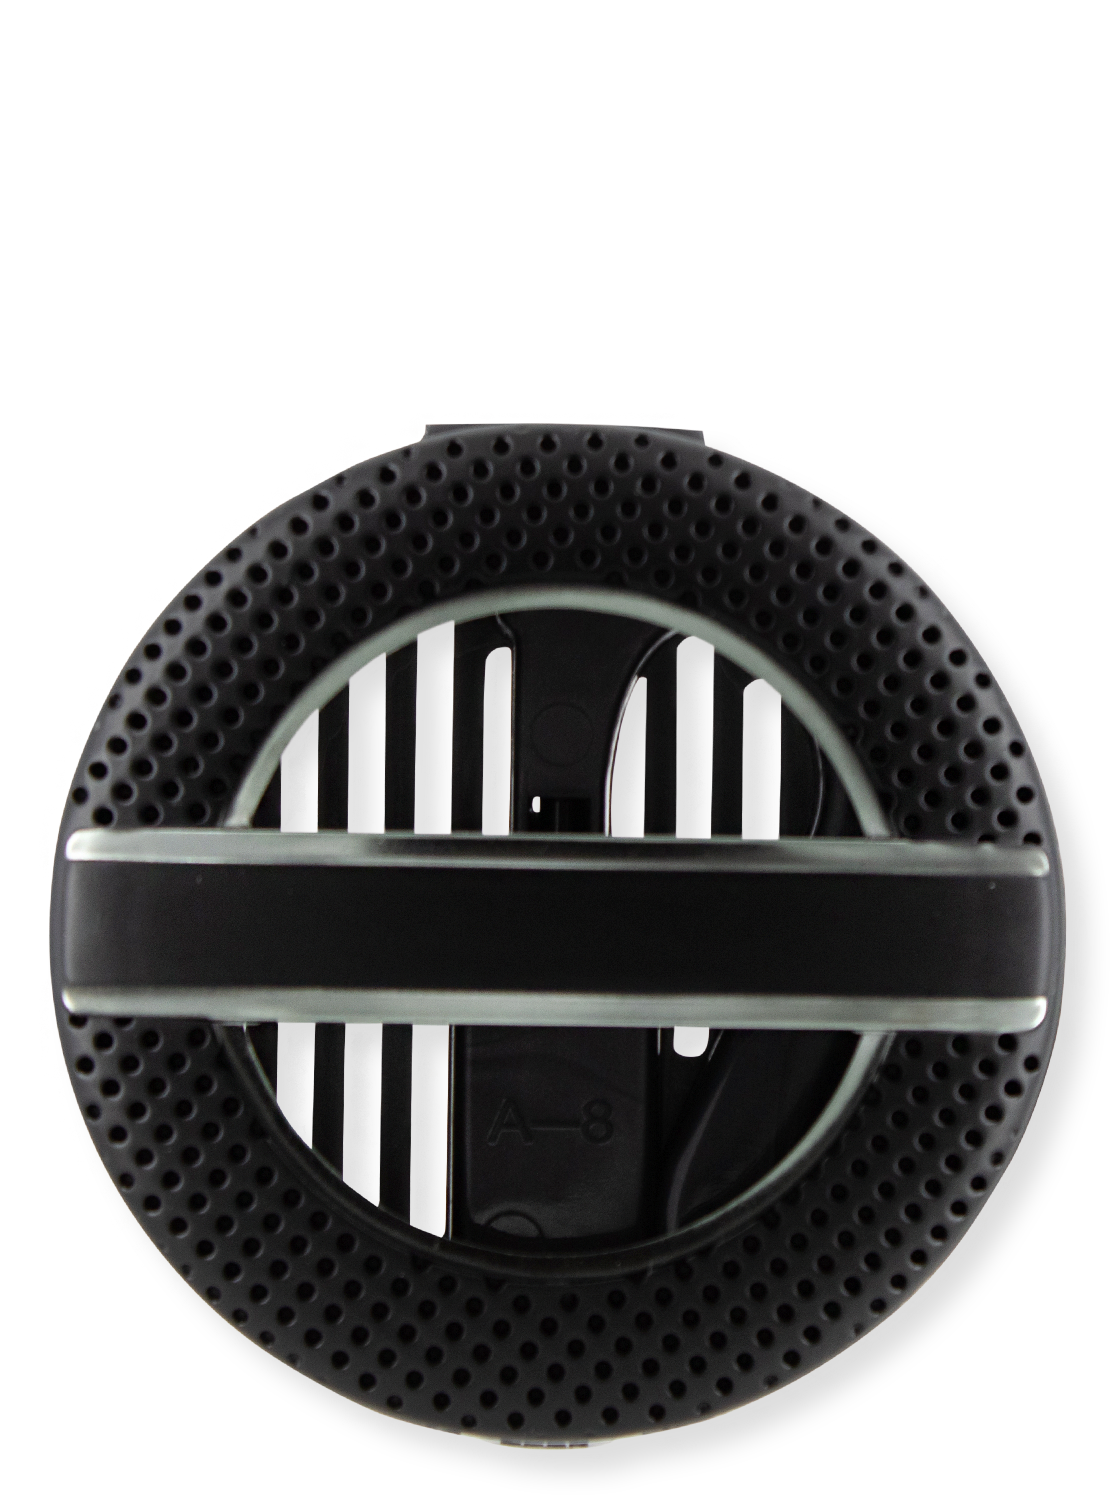 Connecteur de ventilation et clip de visière - Texturé noir